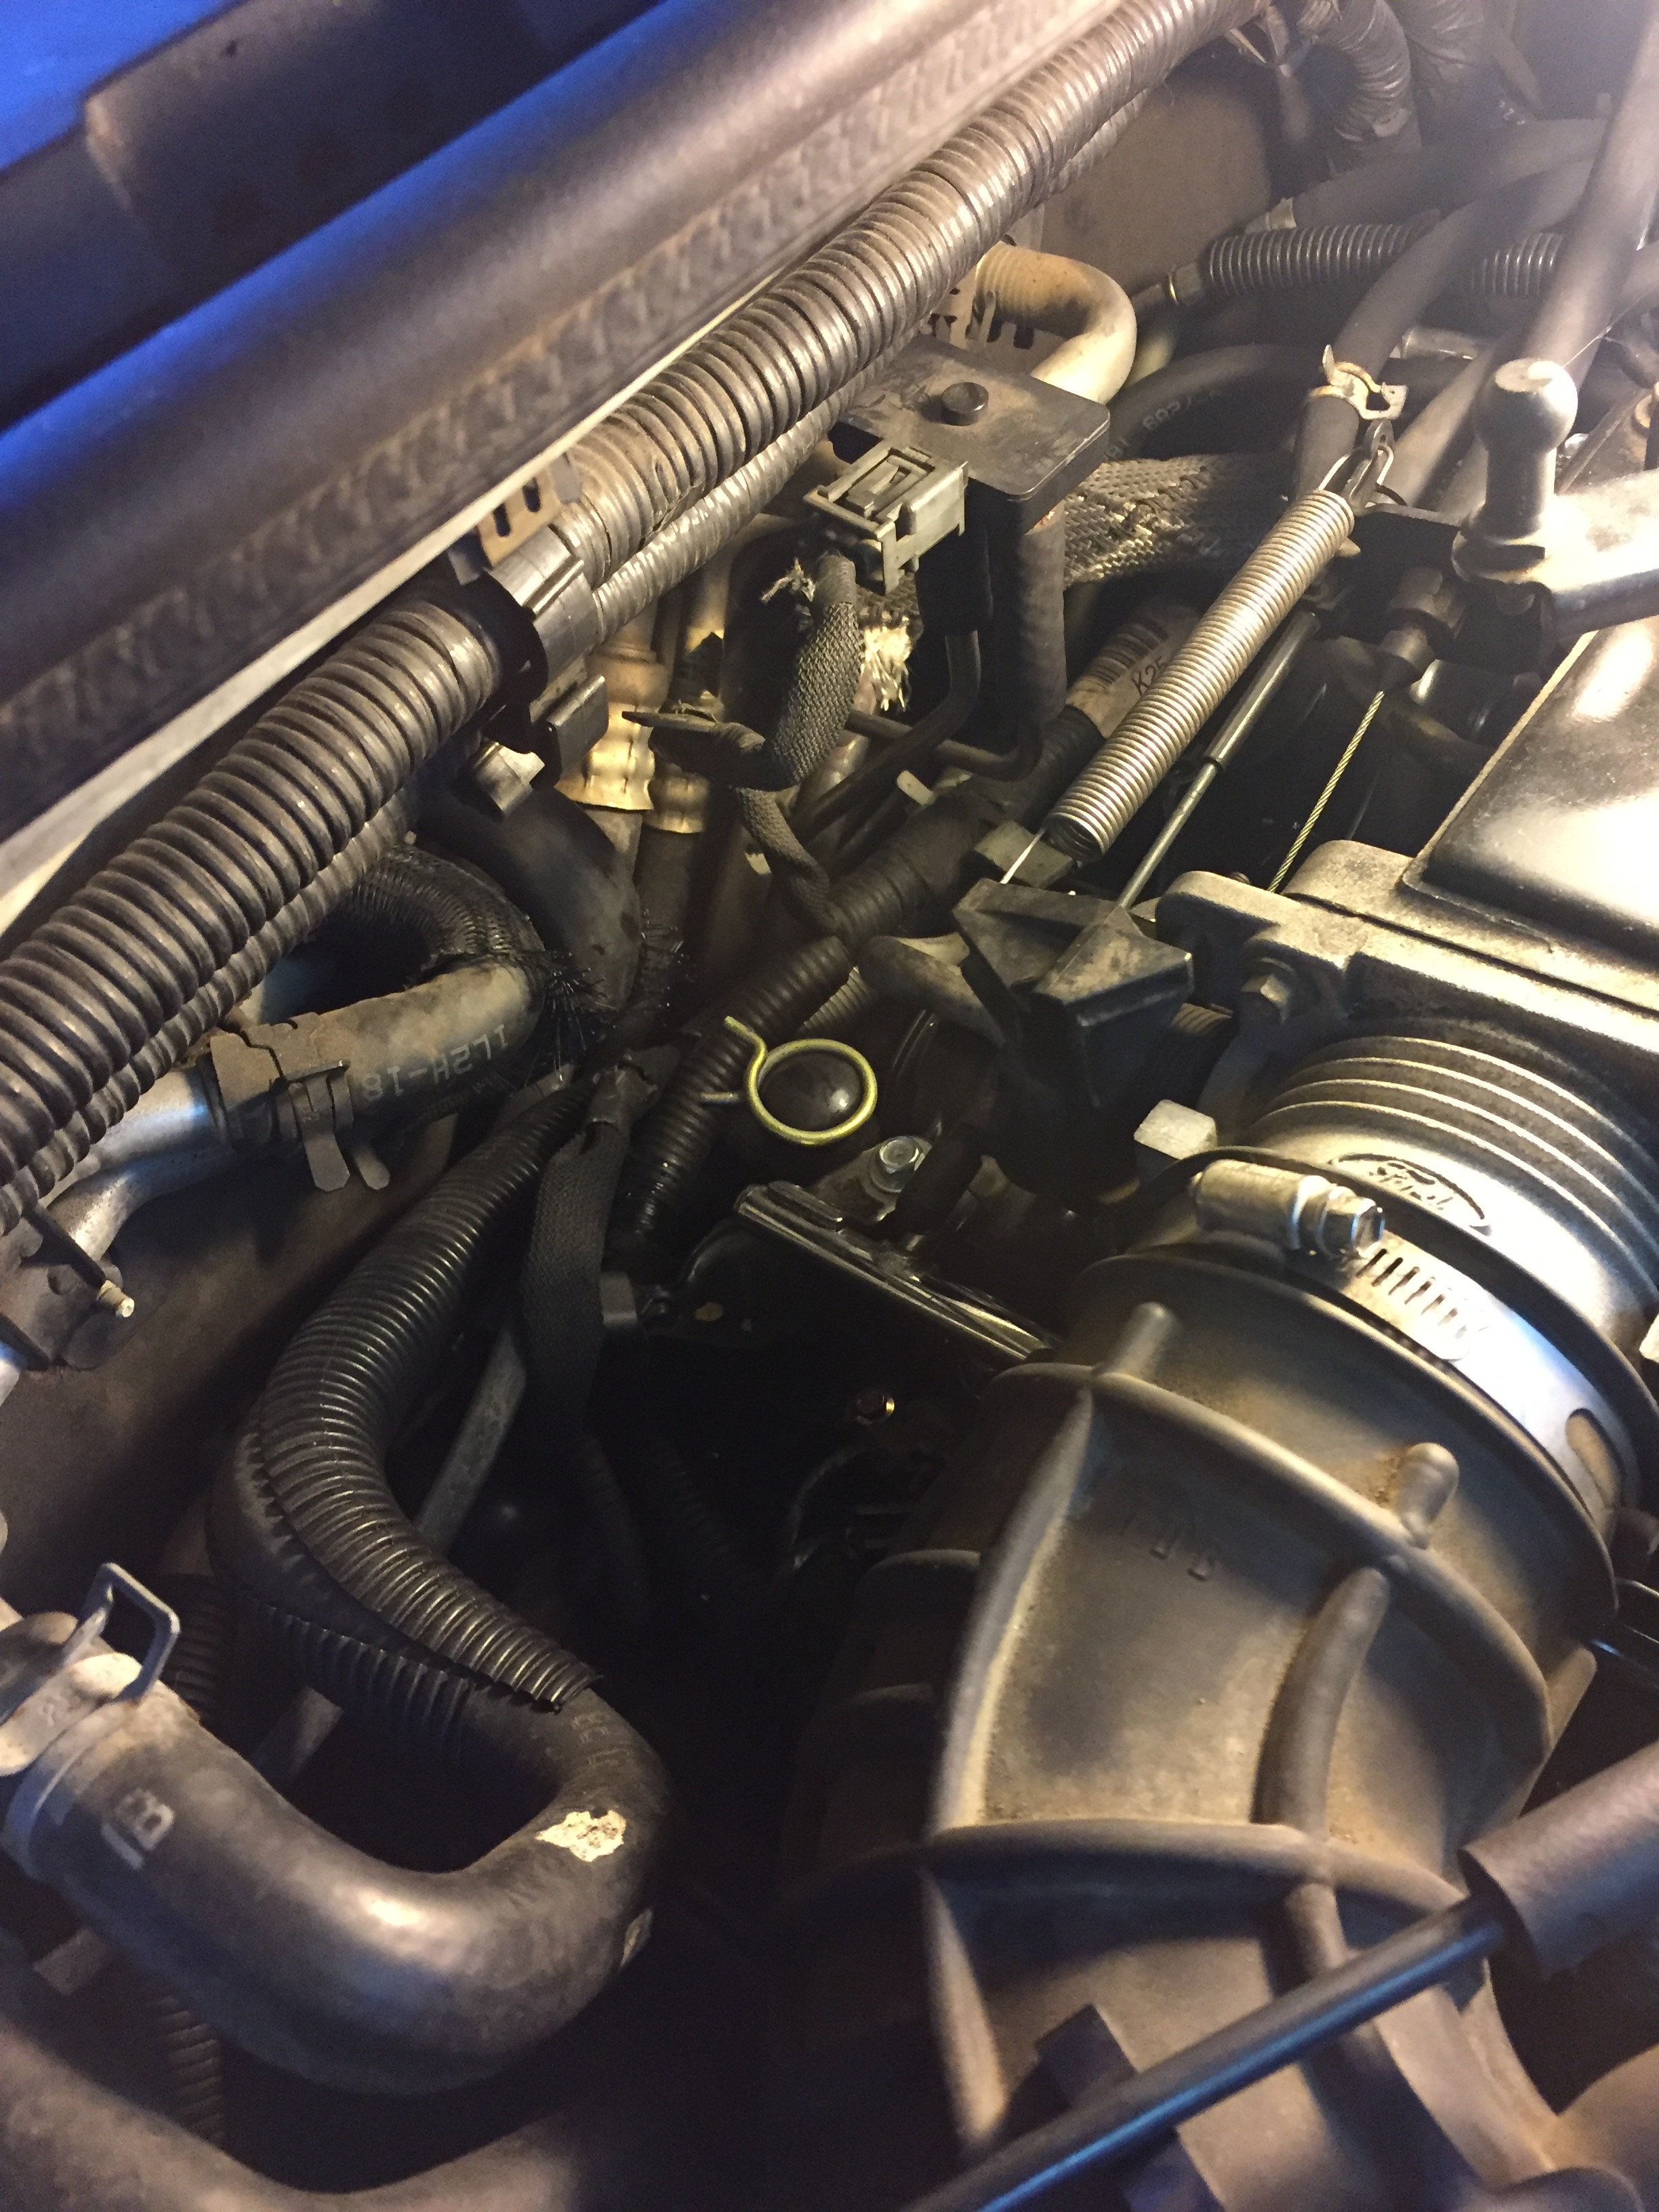 Dorman 4.6l intake coolant leak | Ford Explorer - Ford Ranger Forums 2004 Ford Explorer Coolant Leak On Top Of Engine